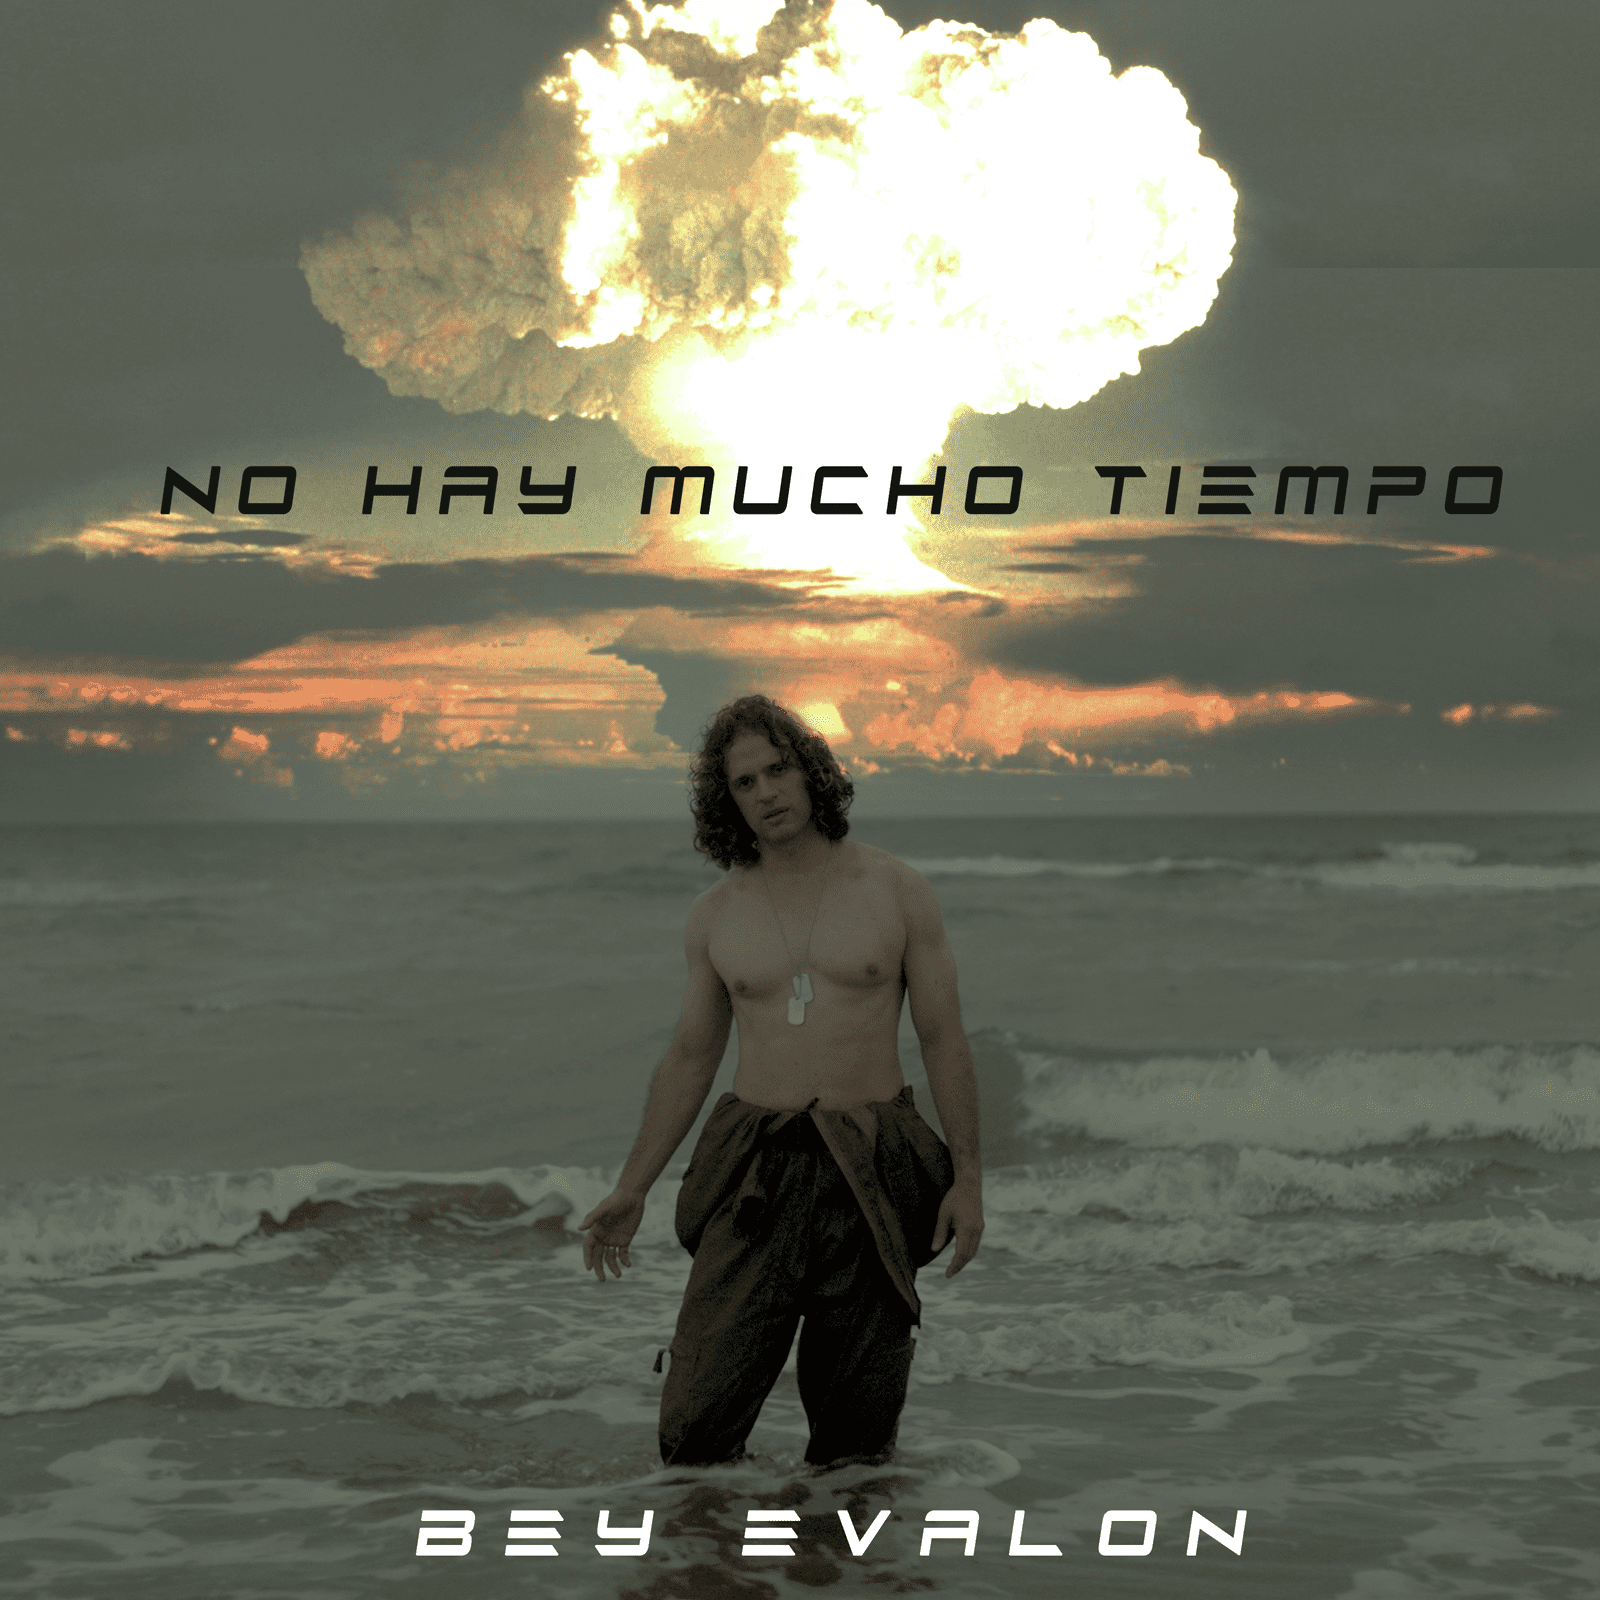 El artista Bey Evalon presenta una poderosa canción “No Hay Mucho Tiempo” un mensaje de reflexión en contra de las guerras en el mundo